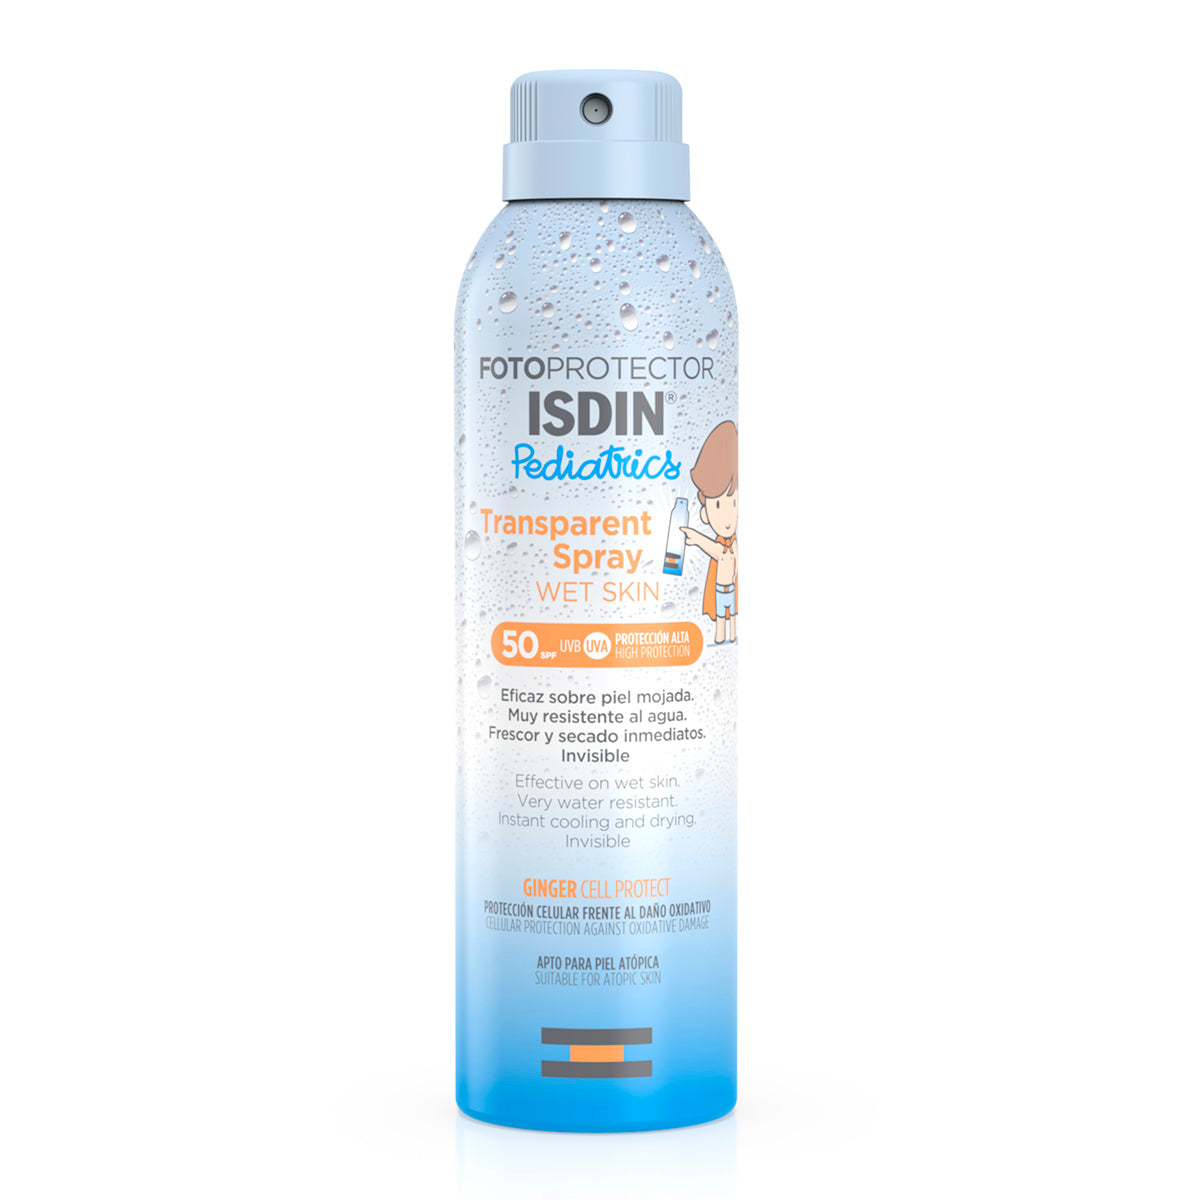 Isdin Fotoprotector isdin 50+ transp. spray wet skin pediatrics 250ml.